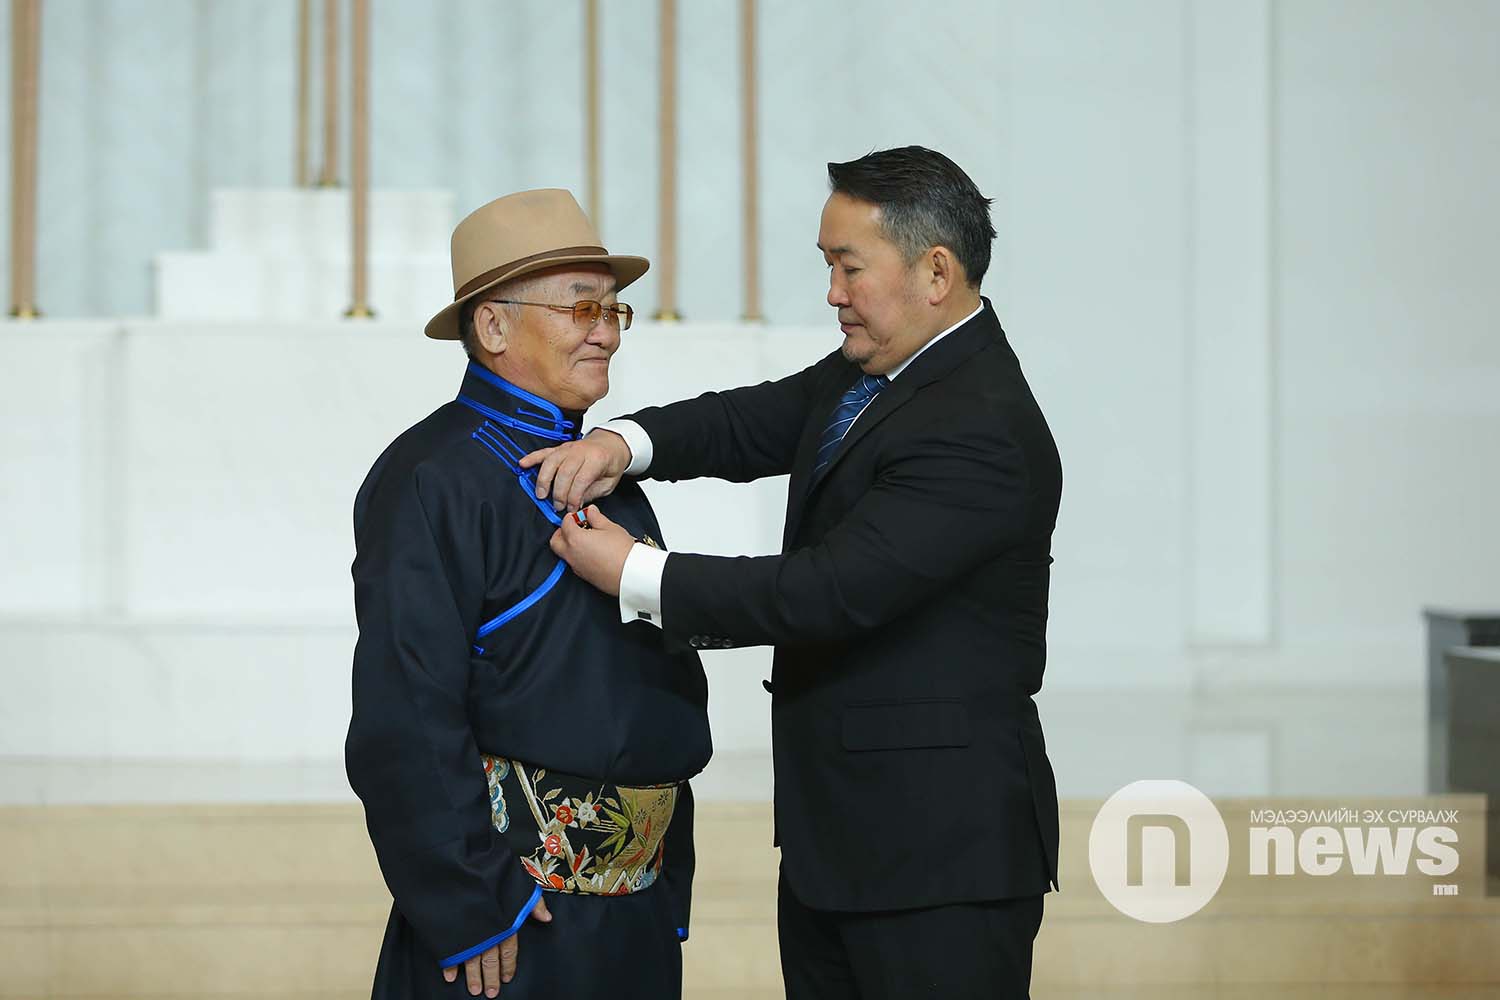 Монгол Улсын Ерөнхийлөгчийн зарлигаар Төрийн дээд одон, медаль гардуулах ёслол (20)